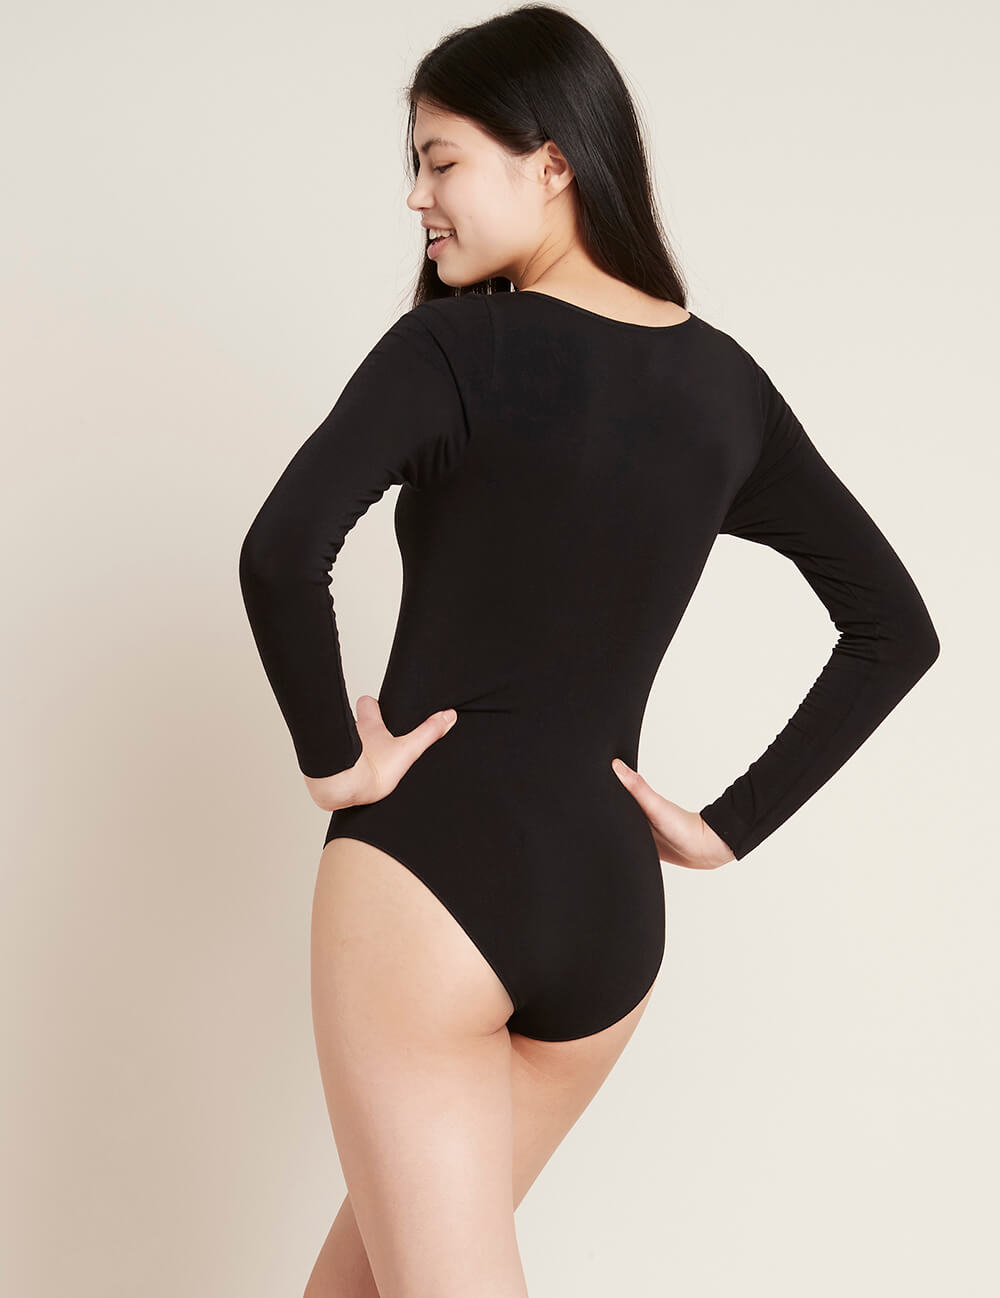 Women_s-Long-Sleeve-Bodysuit-Black-Back.jpg